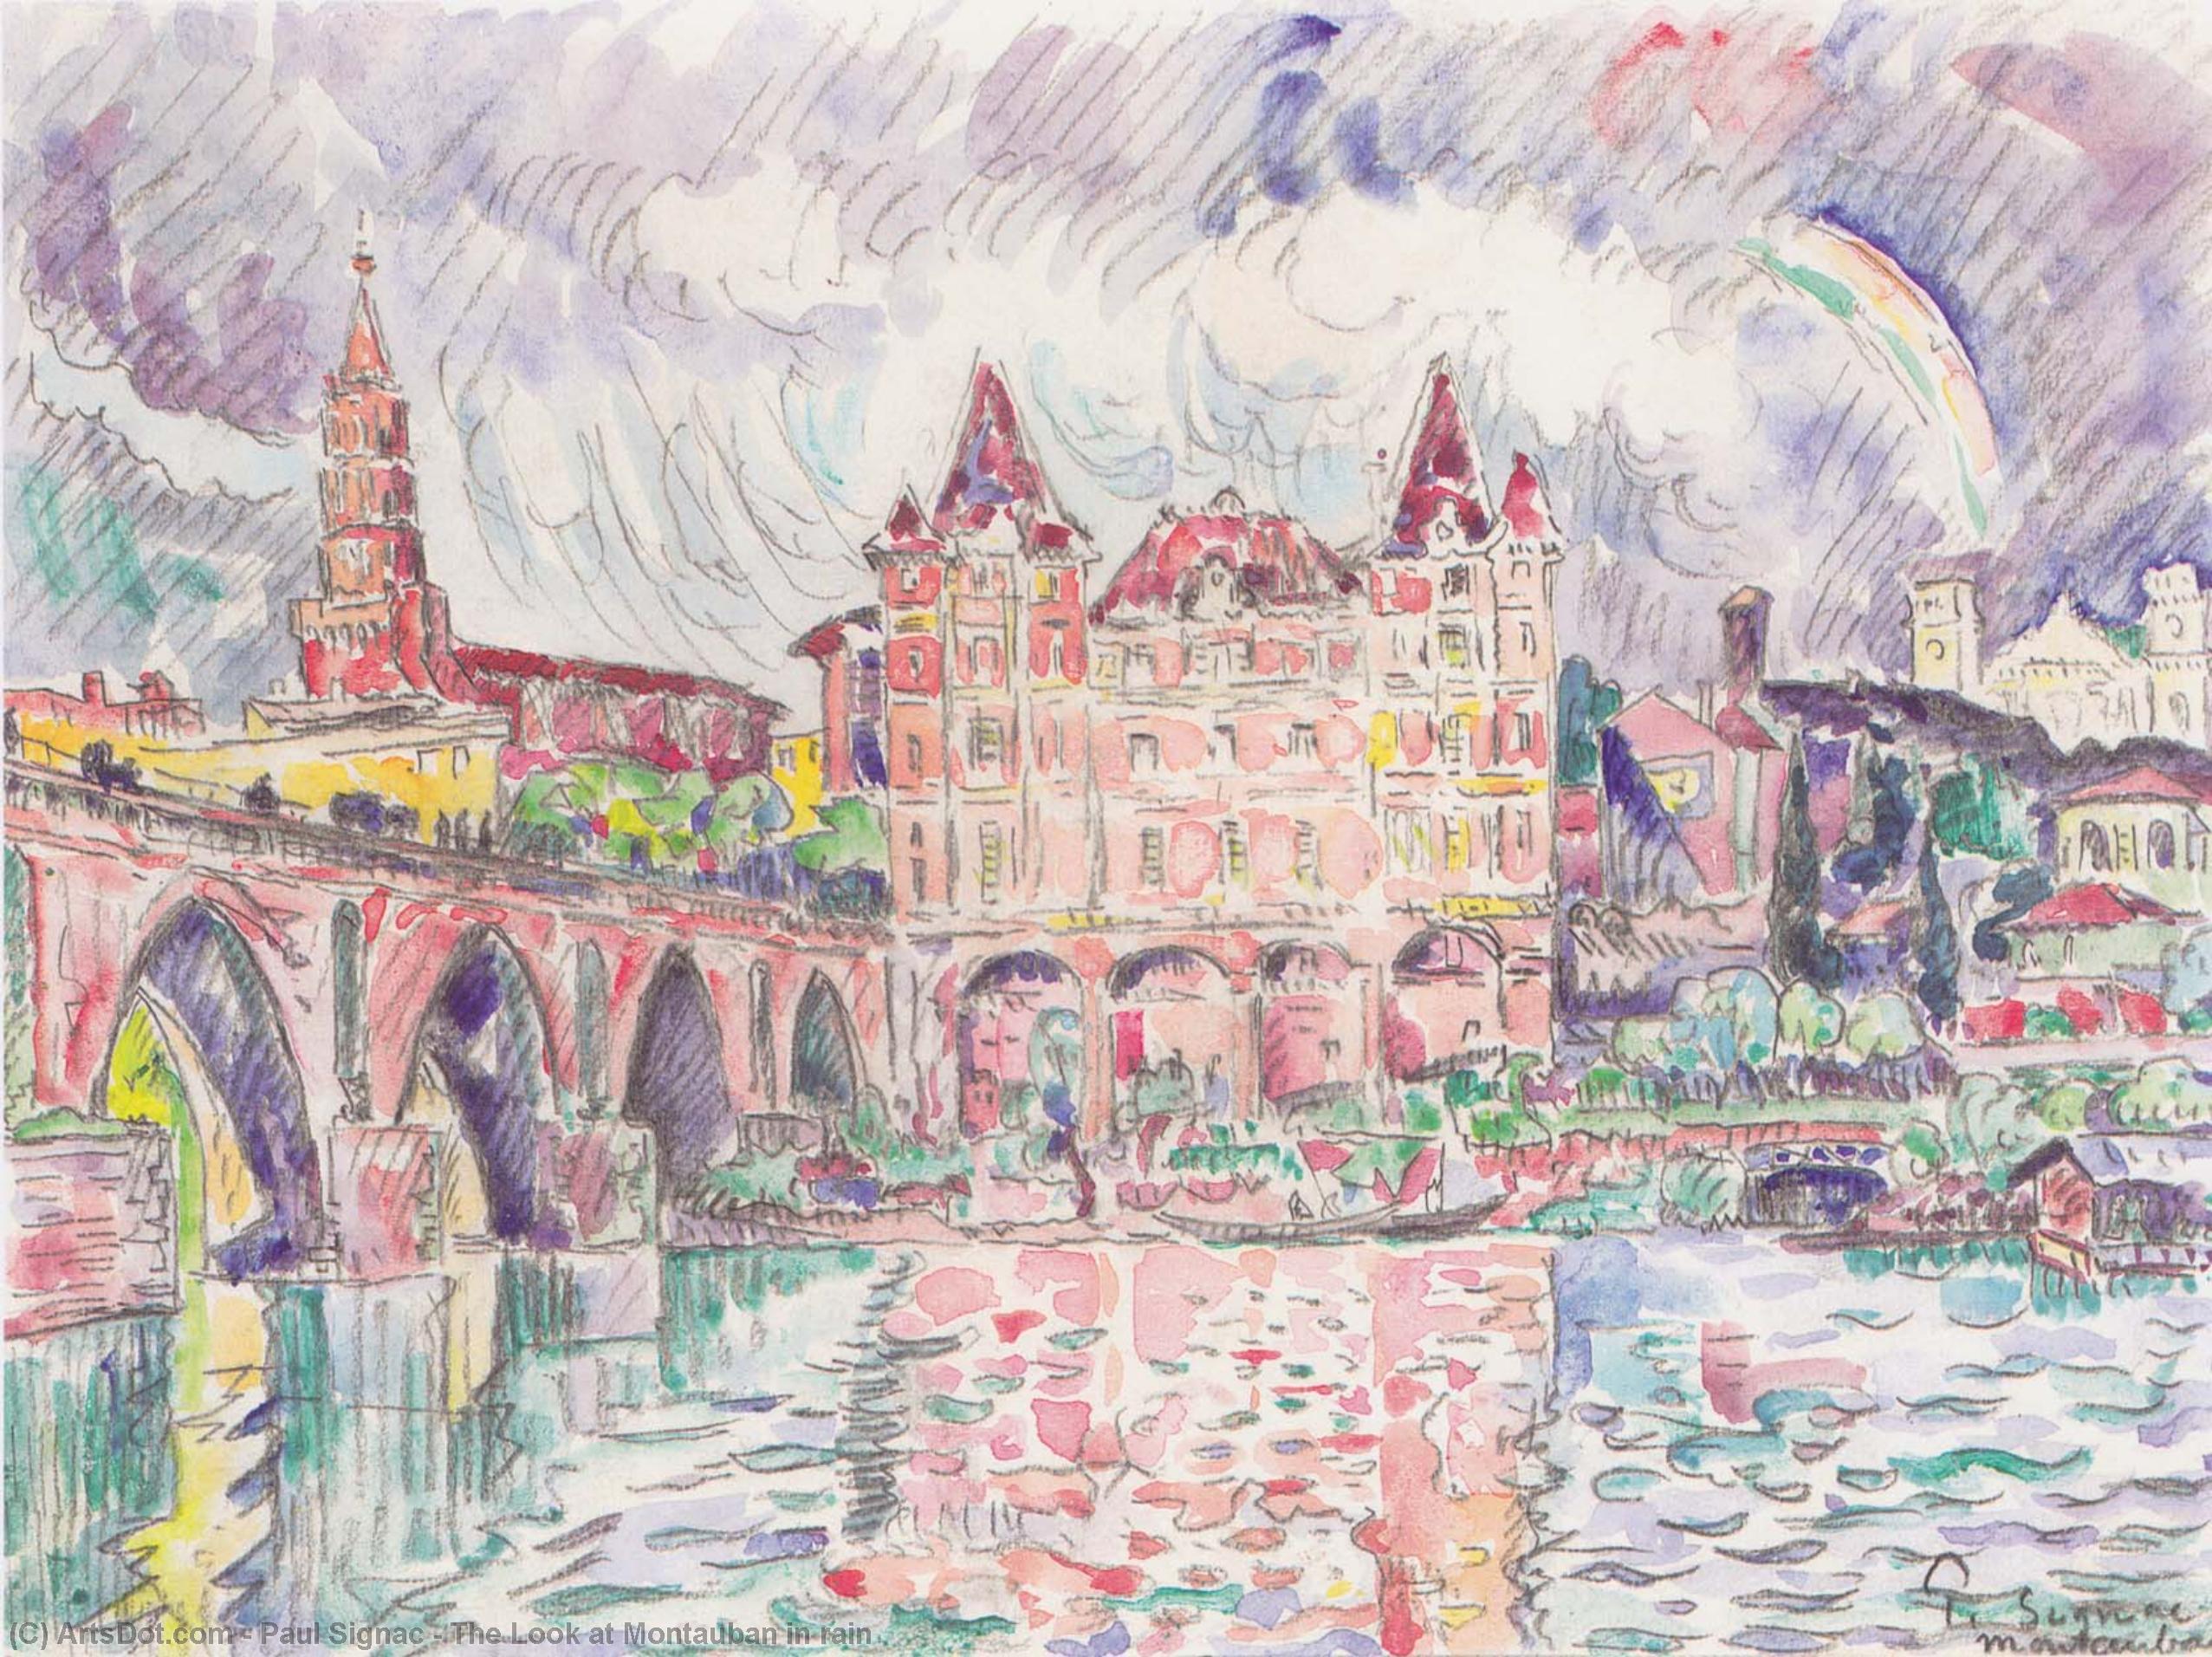 WikiOO.org - Енциклопедия за изящни изкуства - Живопис, Произведения на изкуството Paul Signac - The Look at Montauban in rain